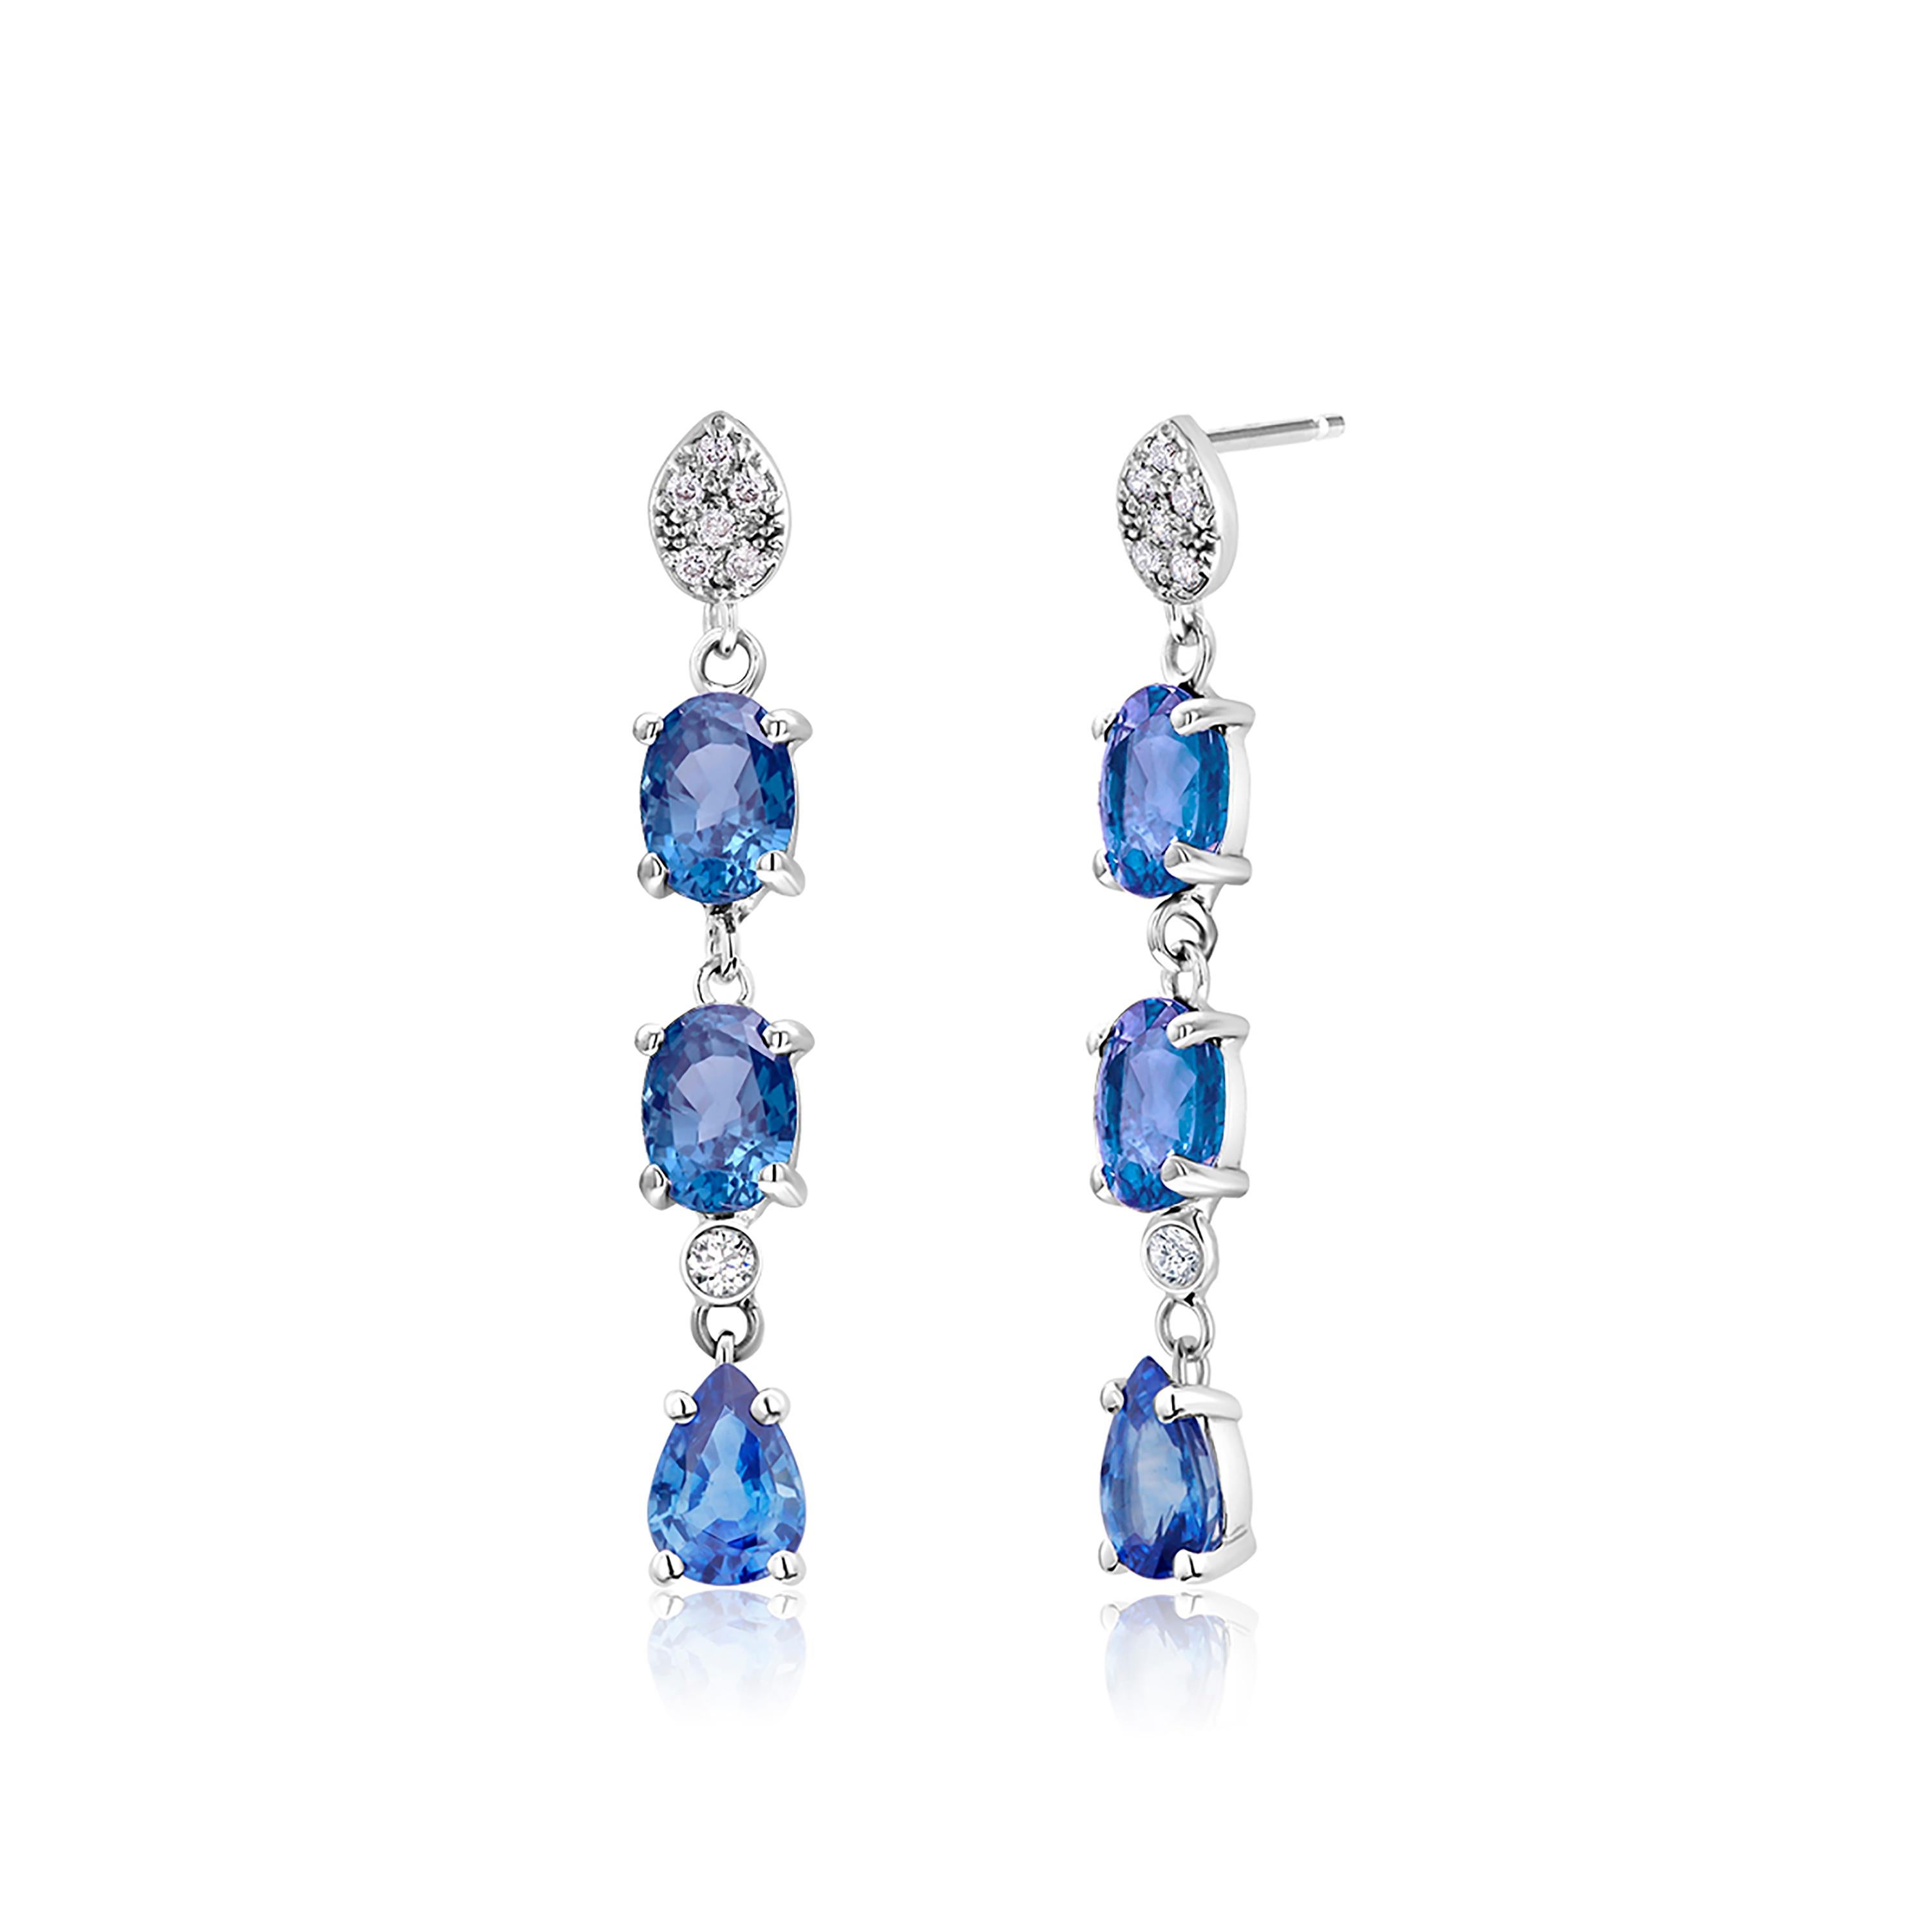 Oval Cut Triple Tier Ceylon Cornflower Blue Sapphires and Diamonds Drop Earrings